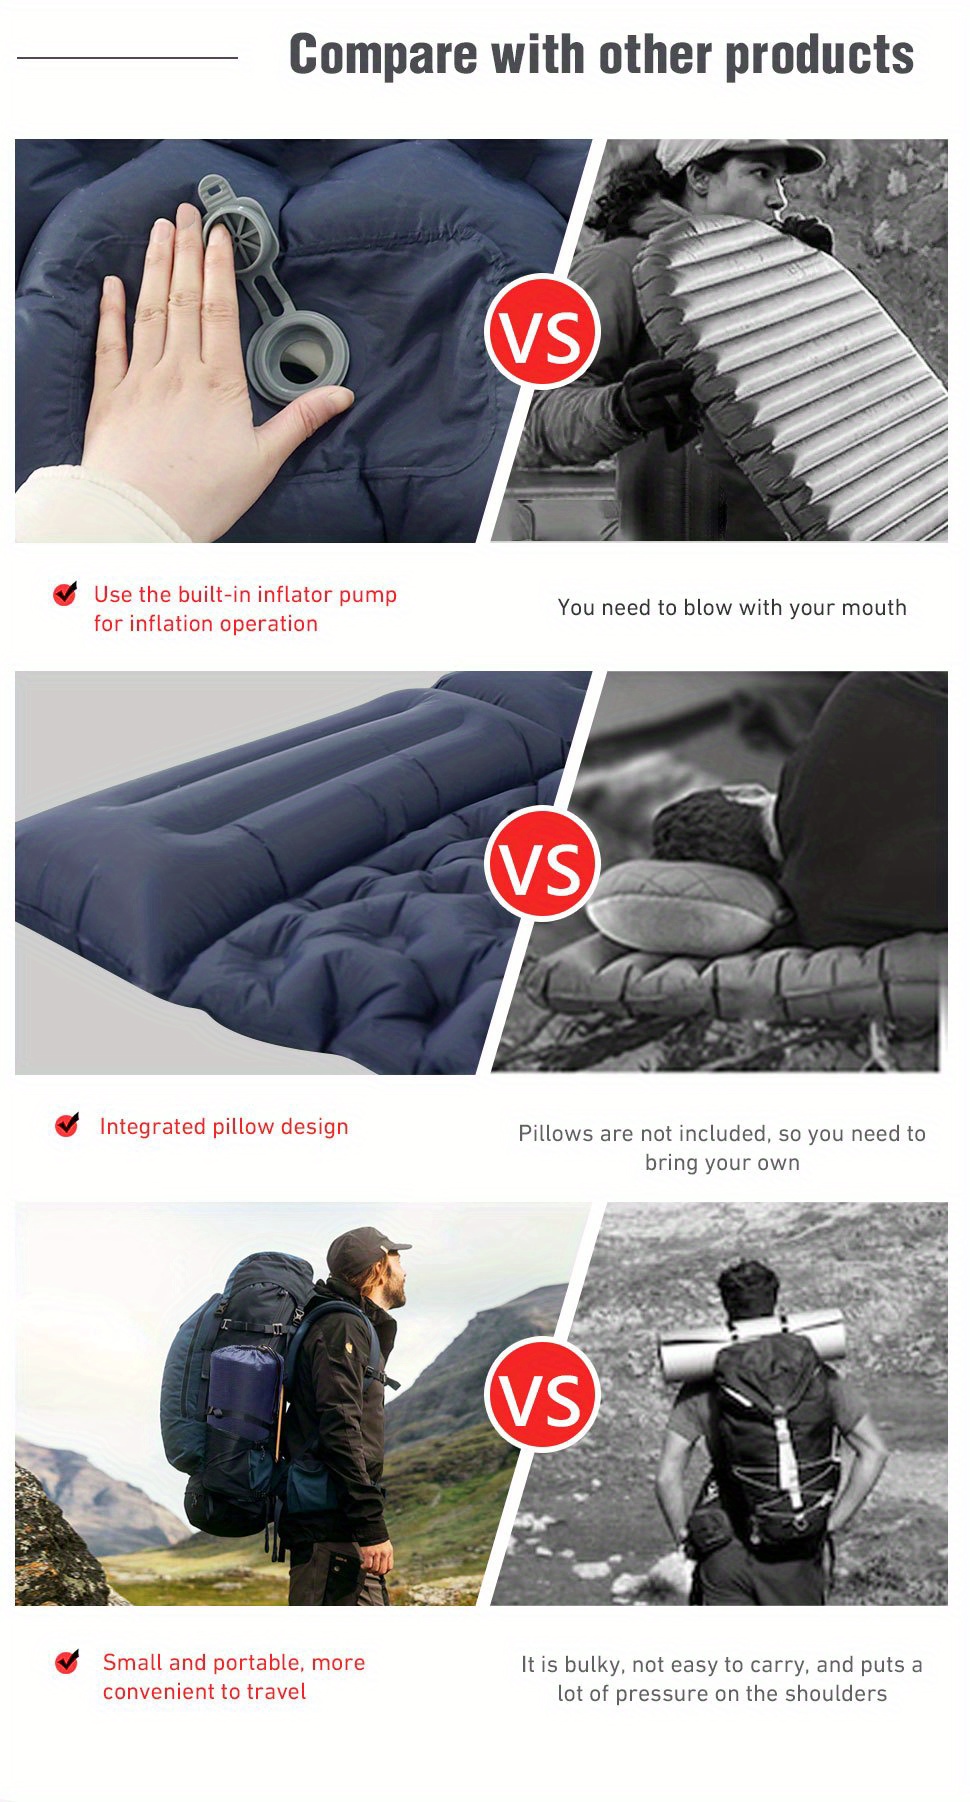 Colchón hinchable Colchoneta ligera para acampar con almohada de aire  Colchón de aire portátil Imper CACAGOO Colchón hinchable